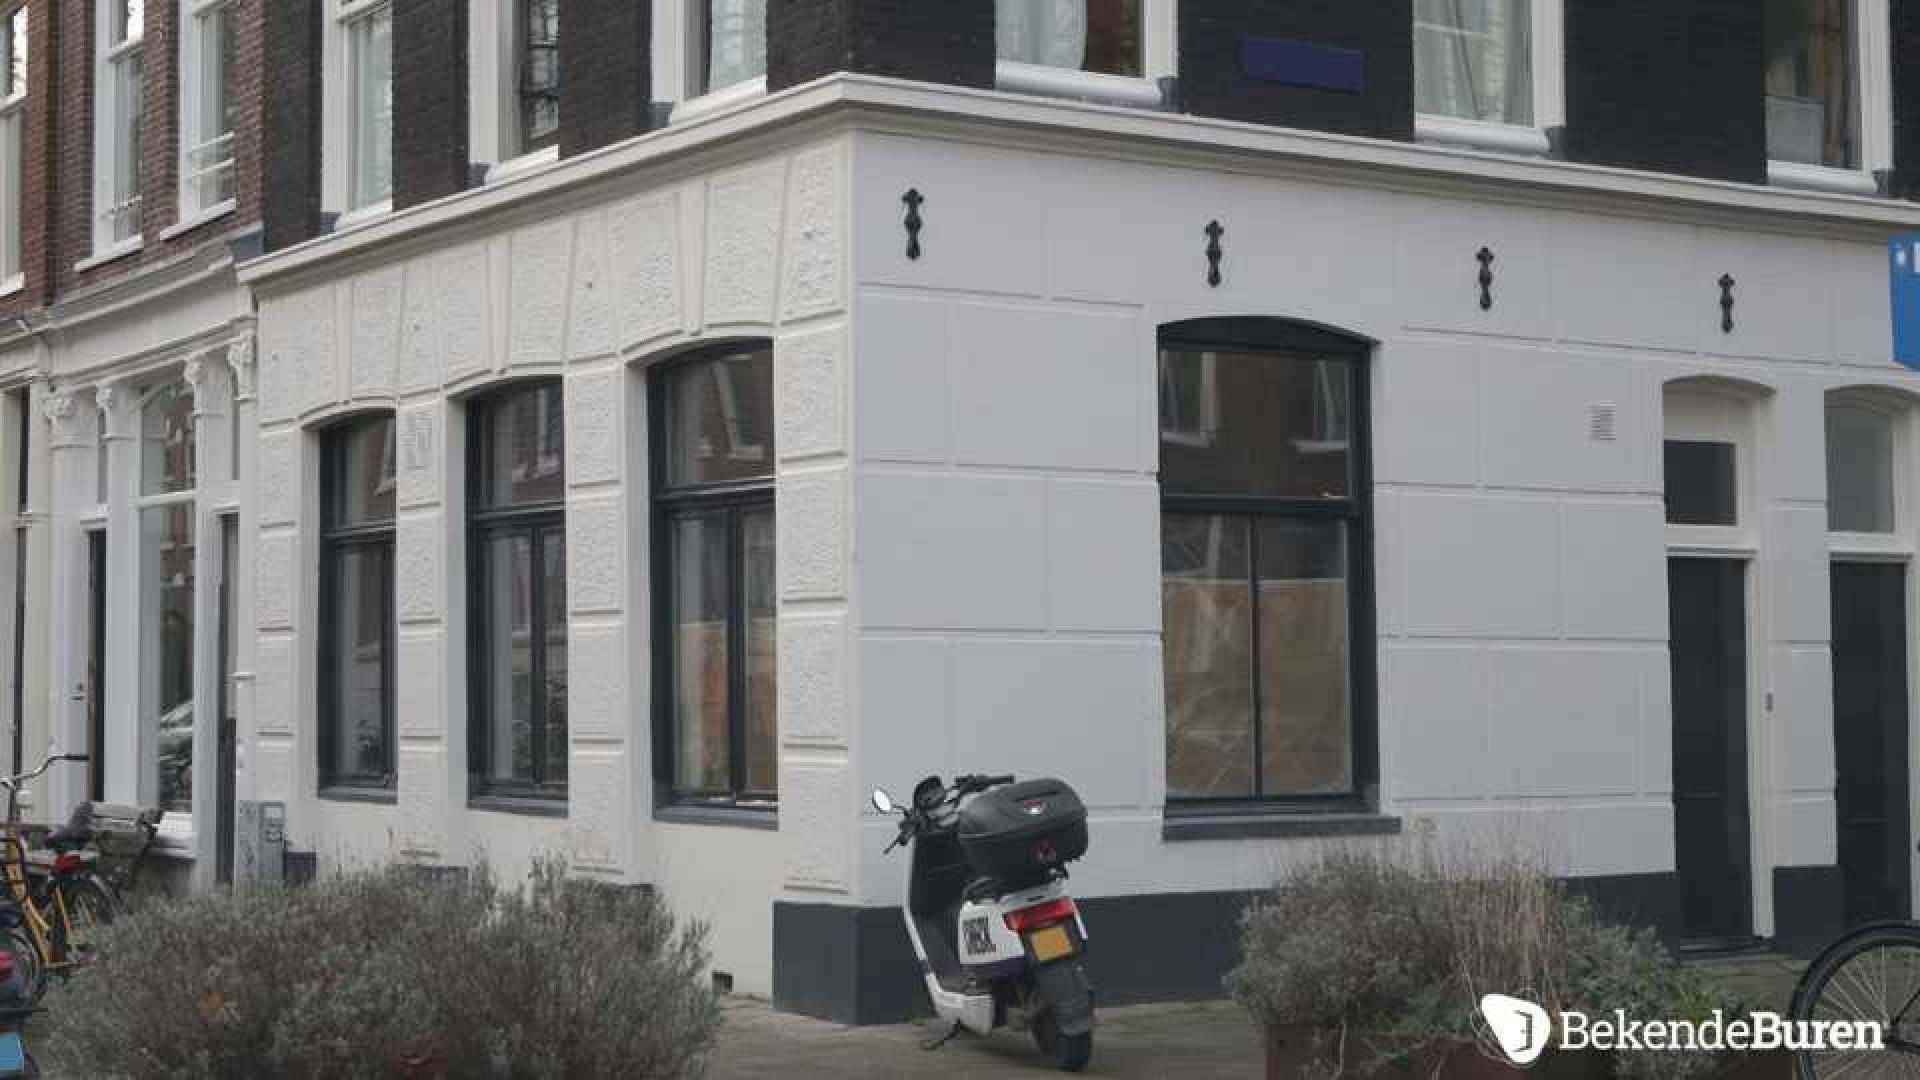 Freek van Noortwijk, ex van Katja Schuurman, druk bezig met het opknappen van zijn woning. Zie foto's 3